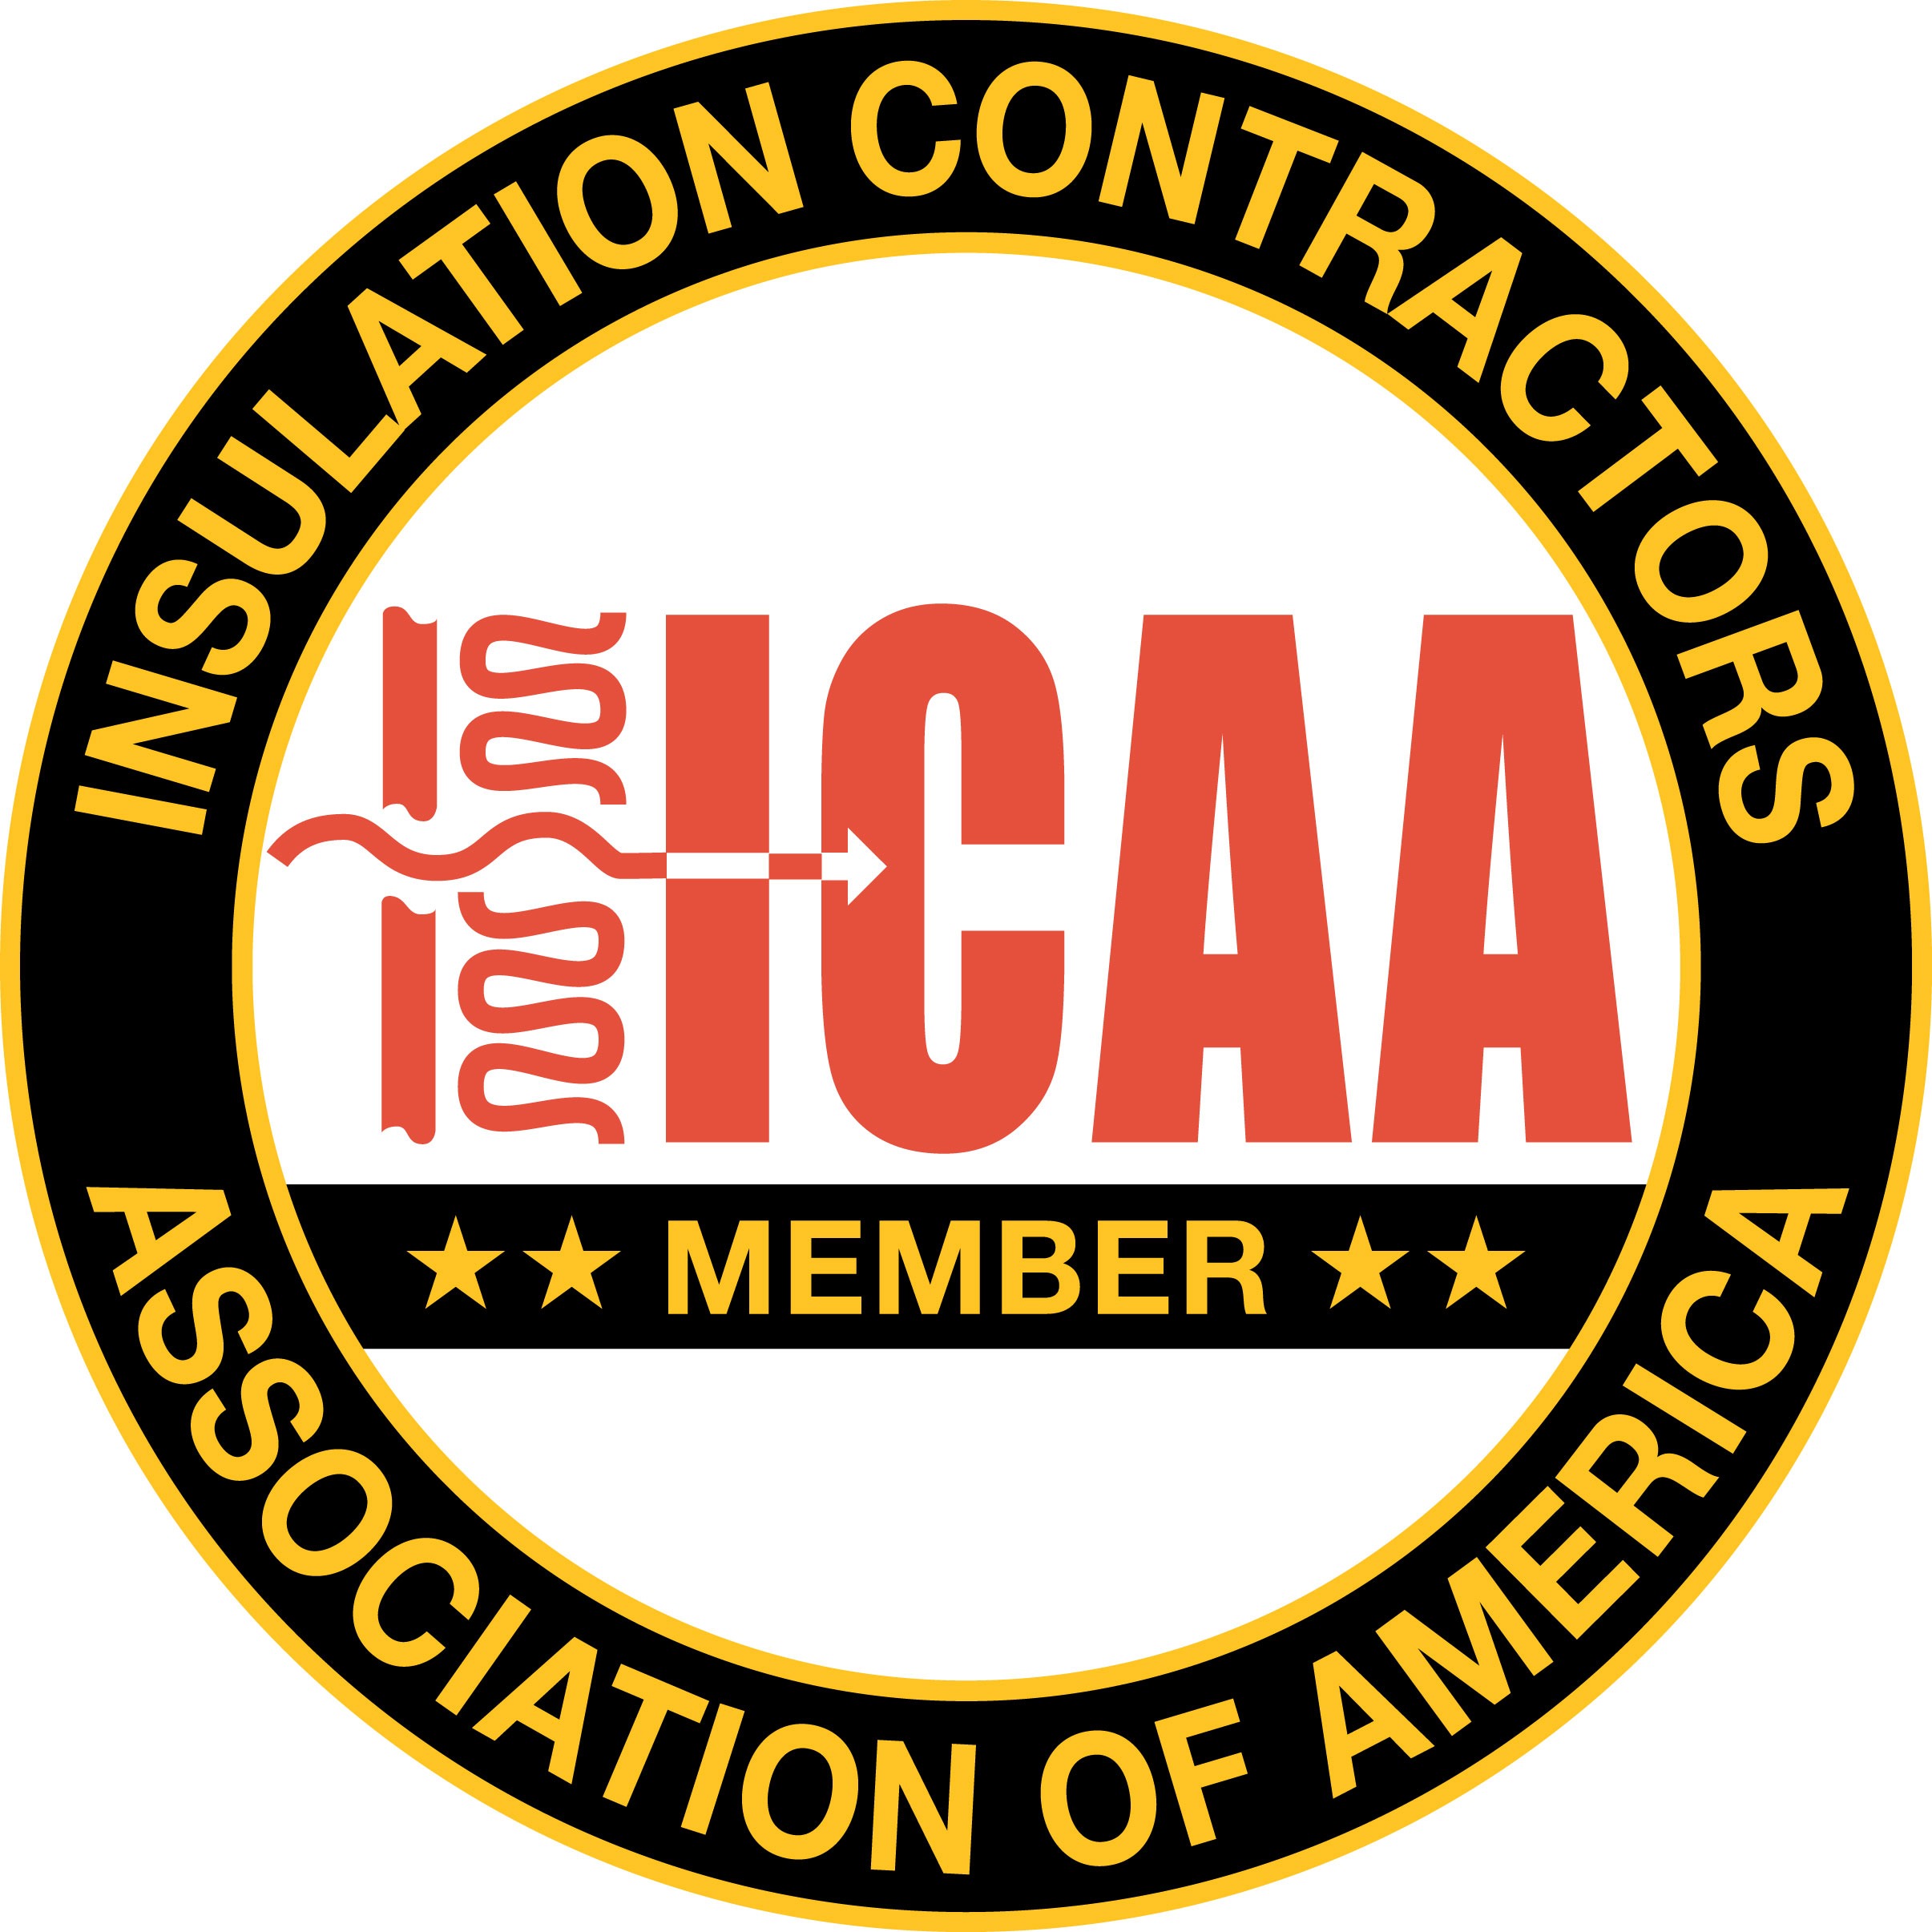 ICAA certification